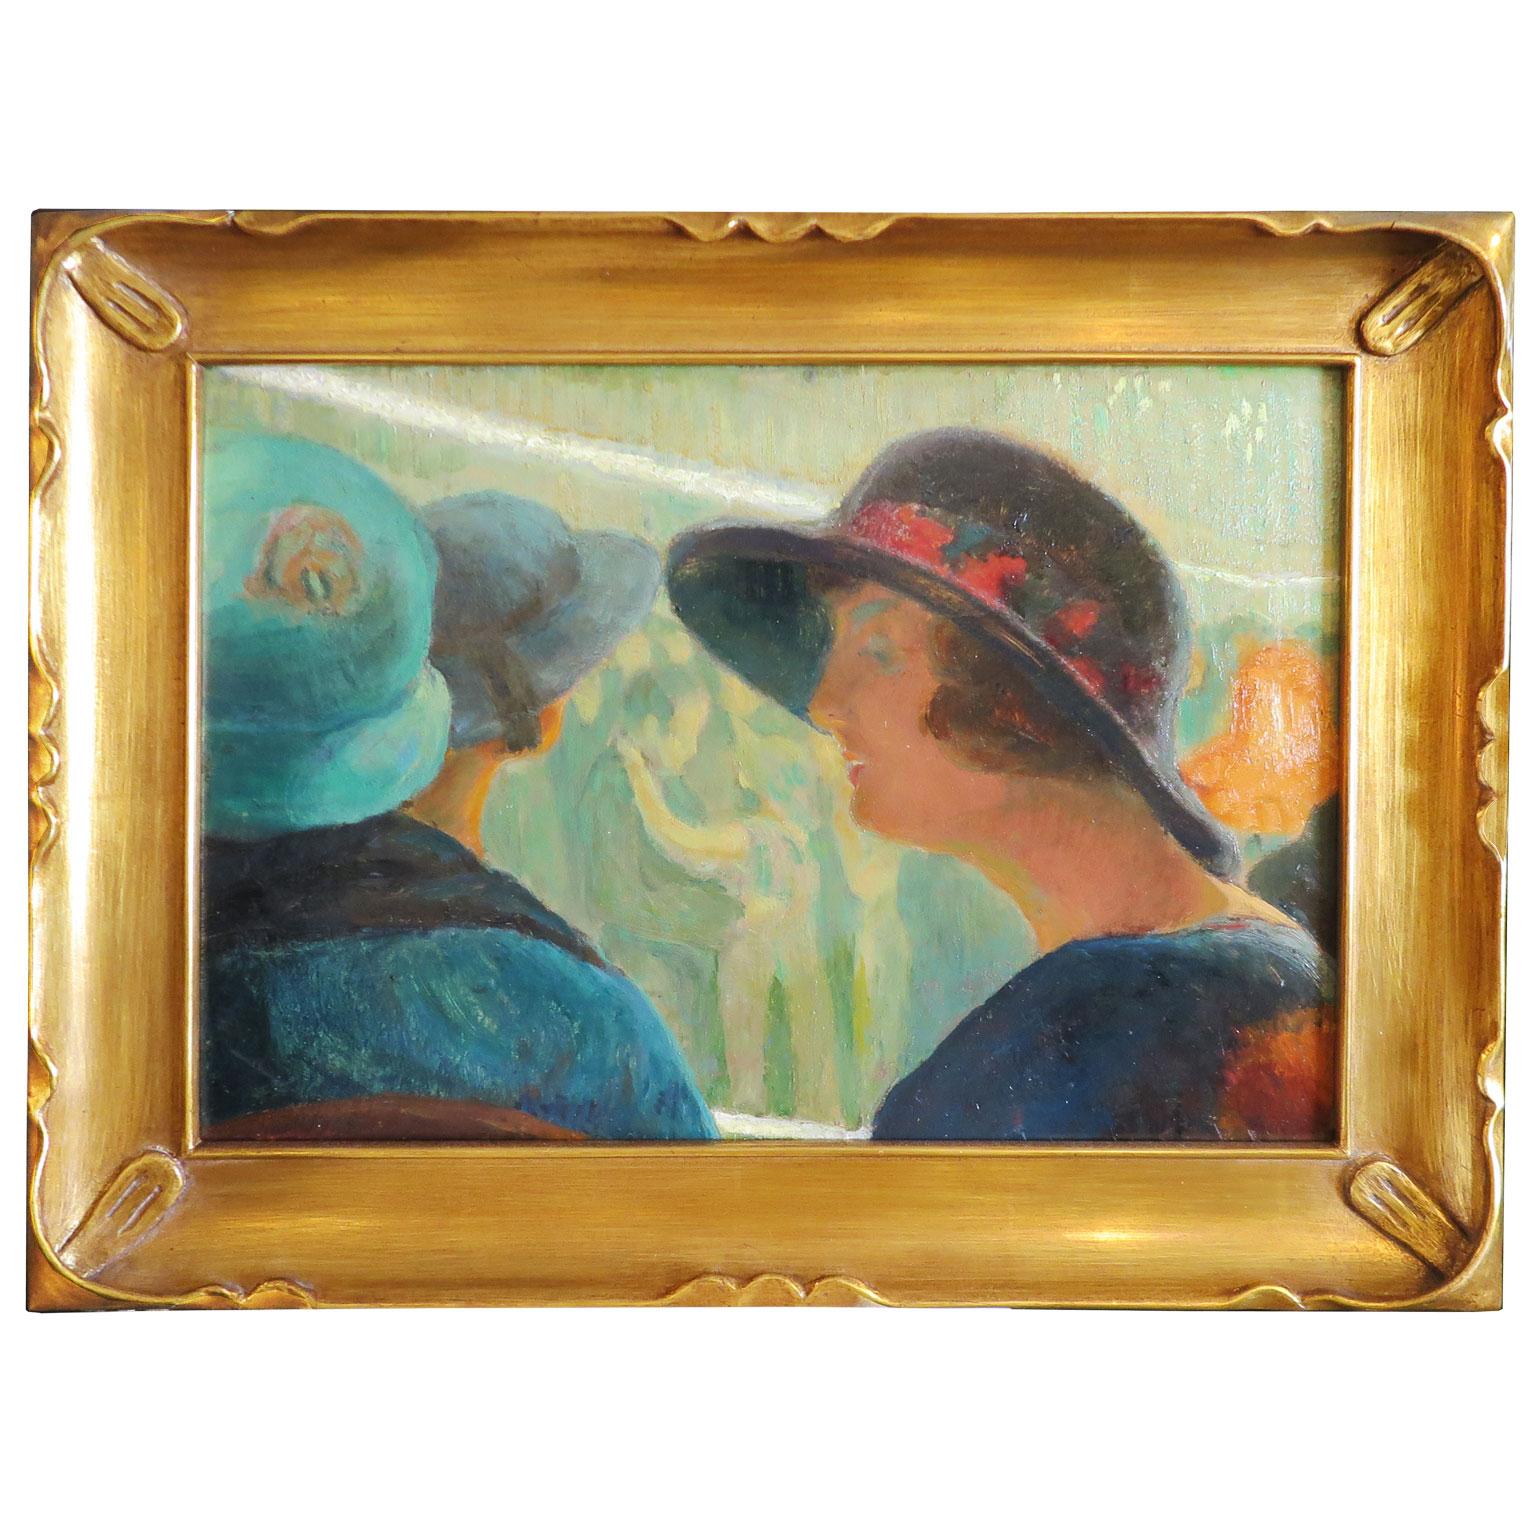 Peinture du XIXe siècle de Philip Swyncop représentant des femmes portant des chapeaux